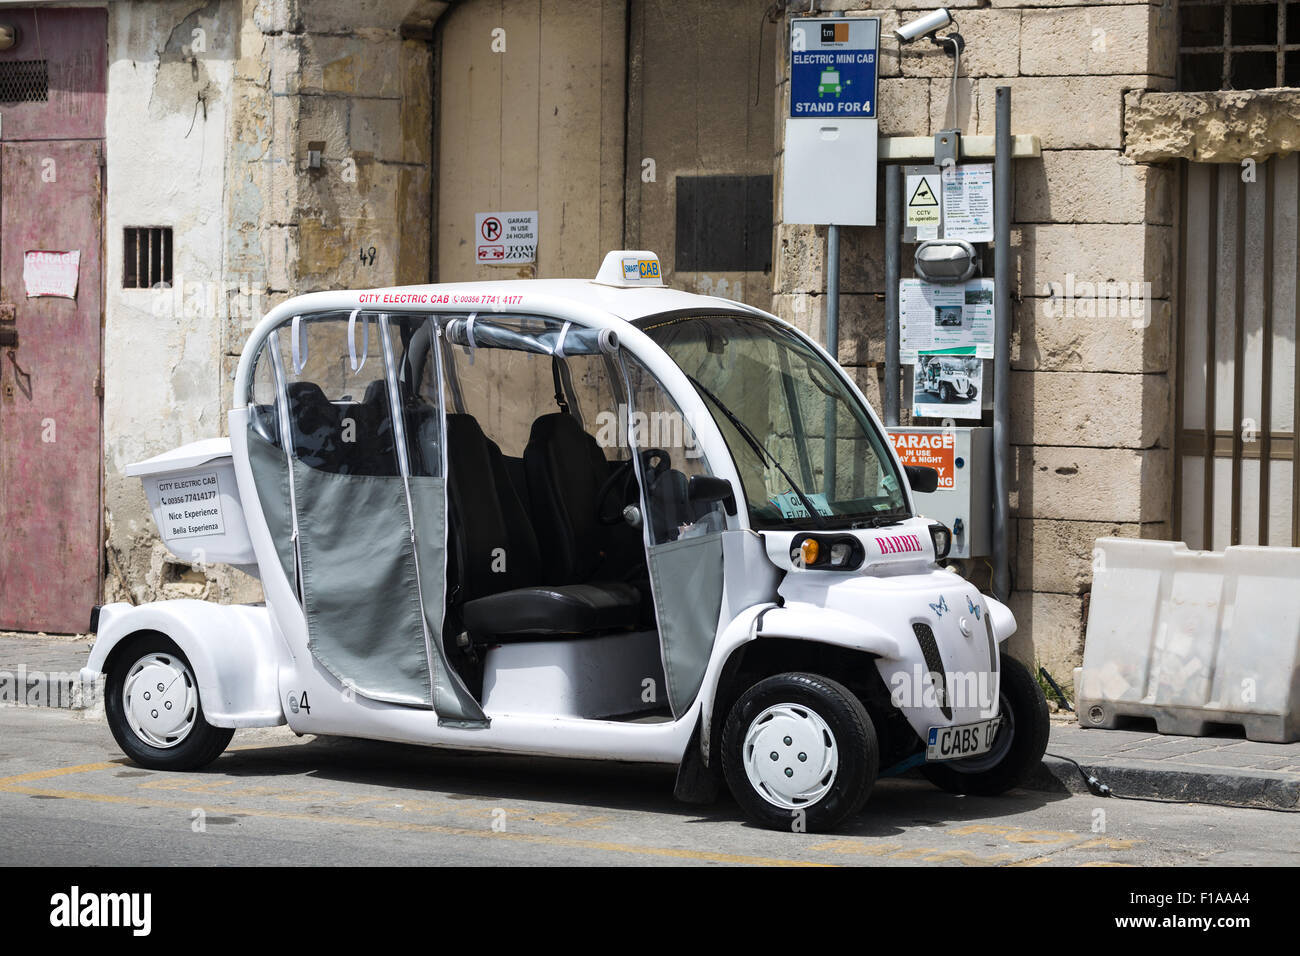 Electric mini cab. Valletta Malta. Stock Photo